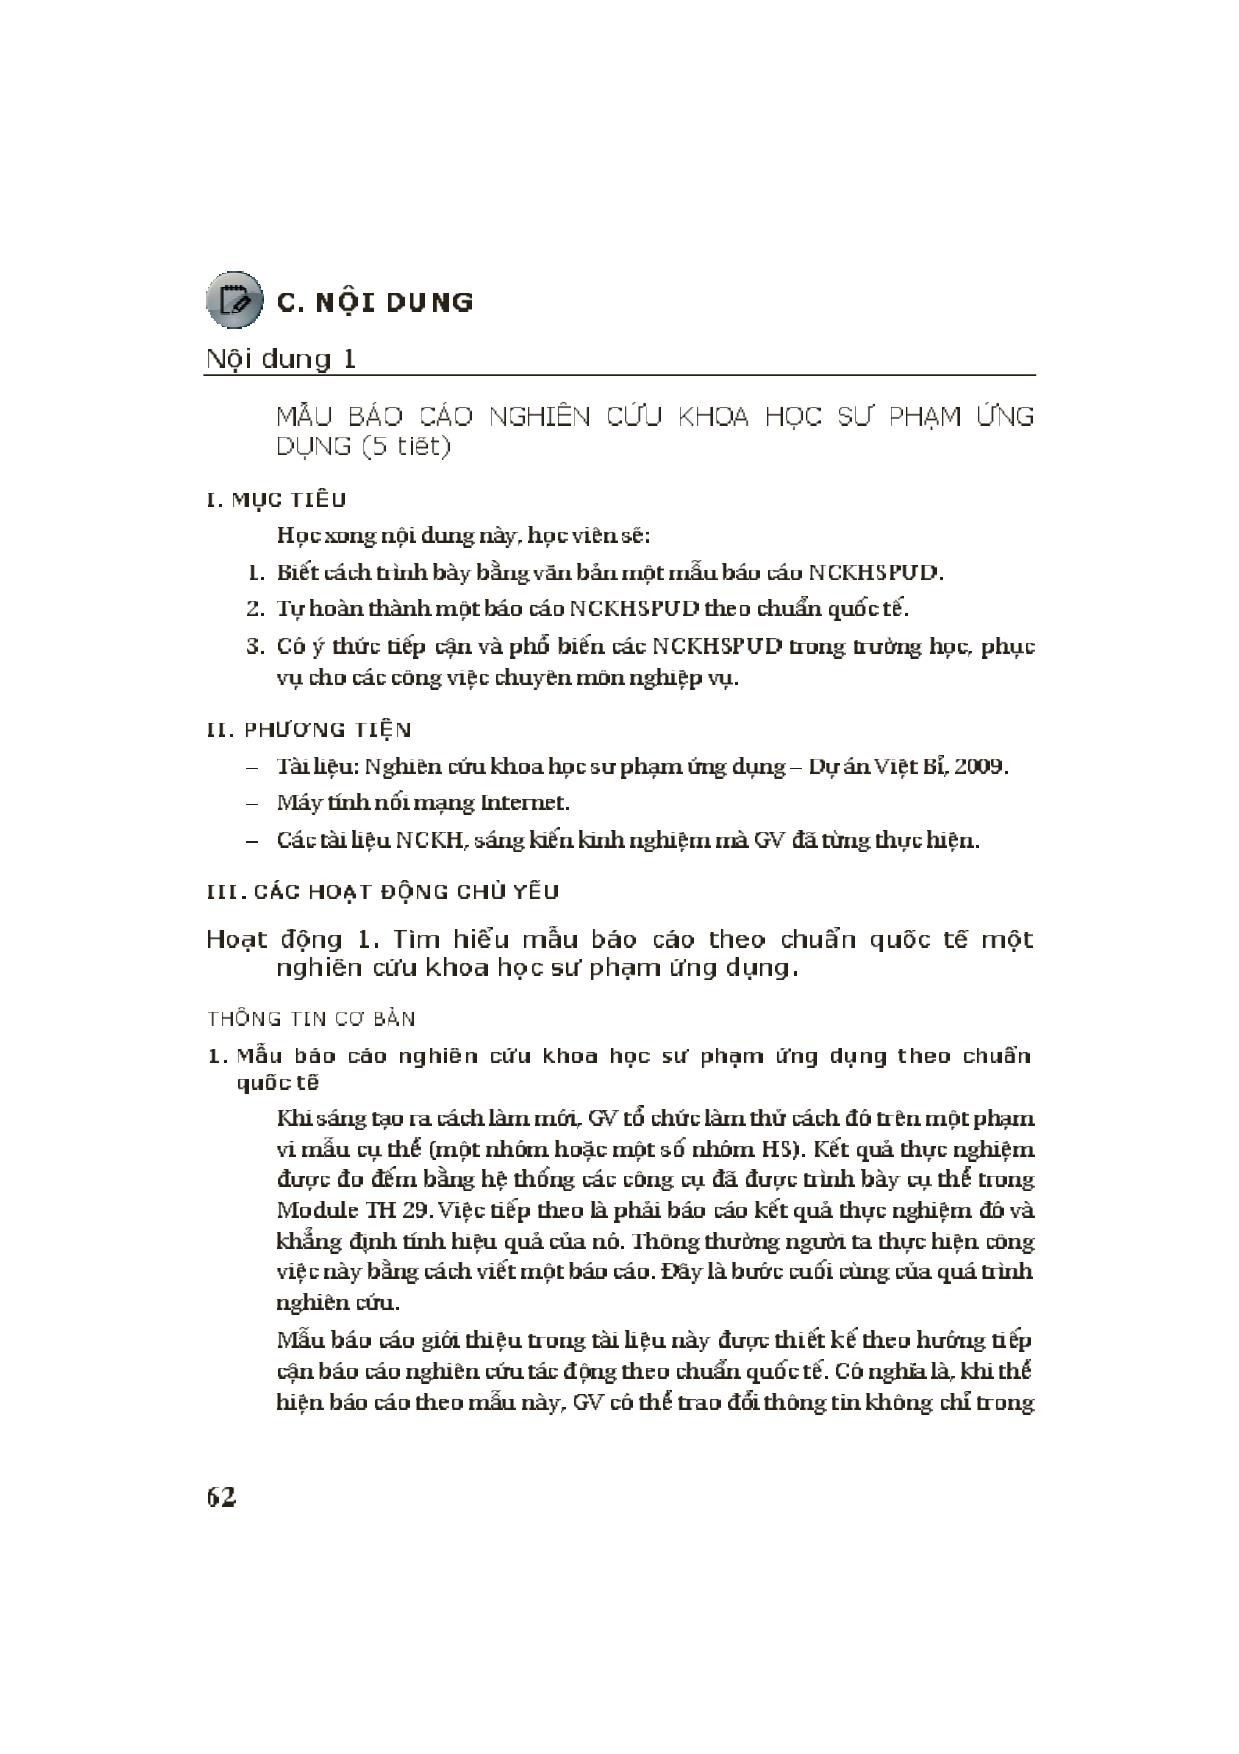 Module Tiểu học 30: Hướng dẫn áp dụng nghiên cứu Khoa học sư phạm úng dụng ở Tiểu học trong điều kiện thực tế Việt Nam trang 4